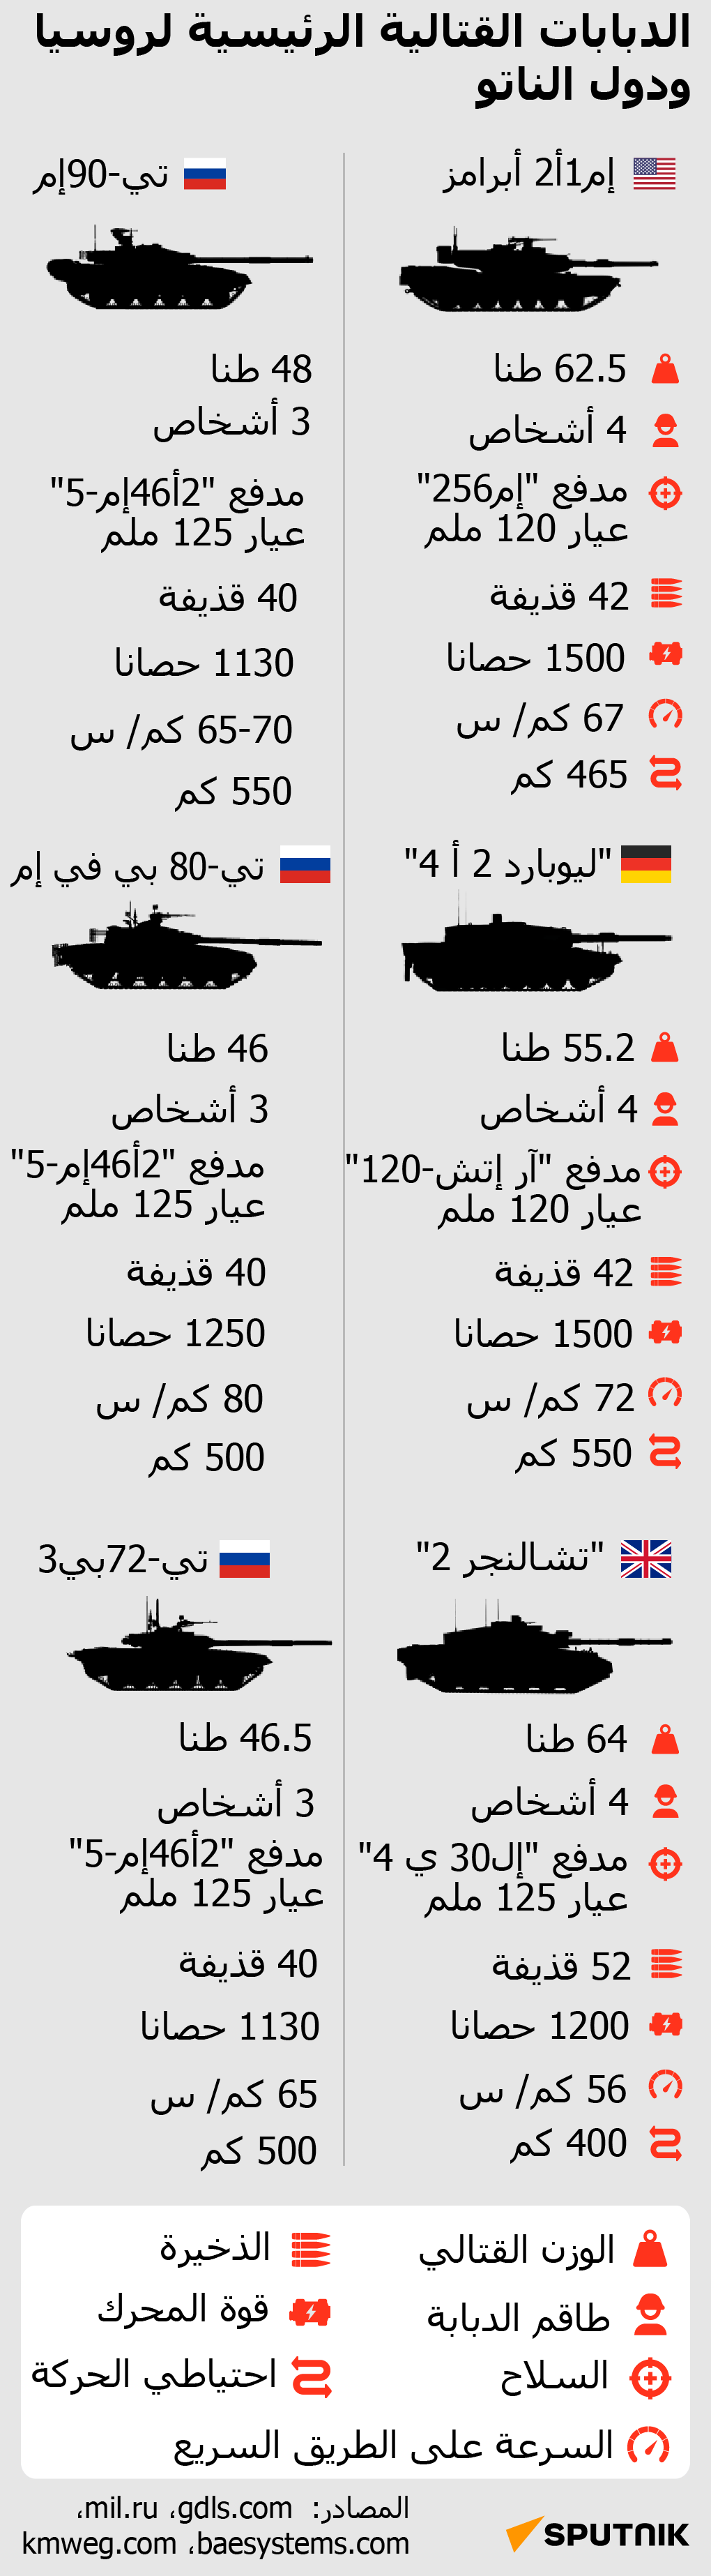 الدبابات القتالية الرئيسية لروسيا ودول الناتو - سبوتنيك عربي